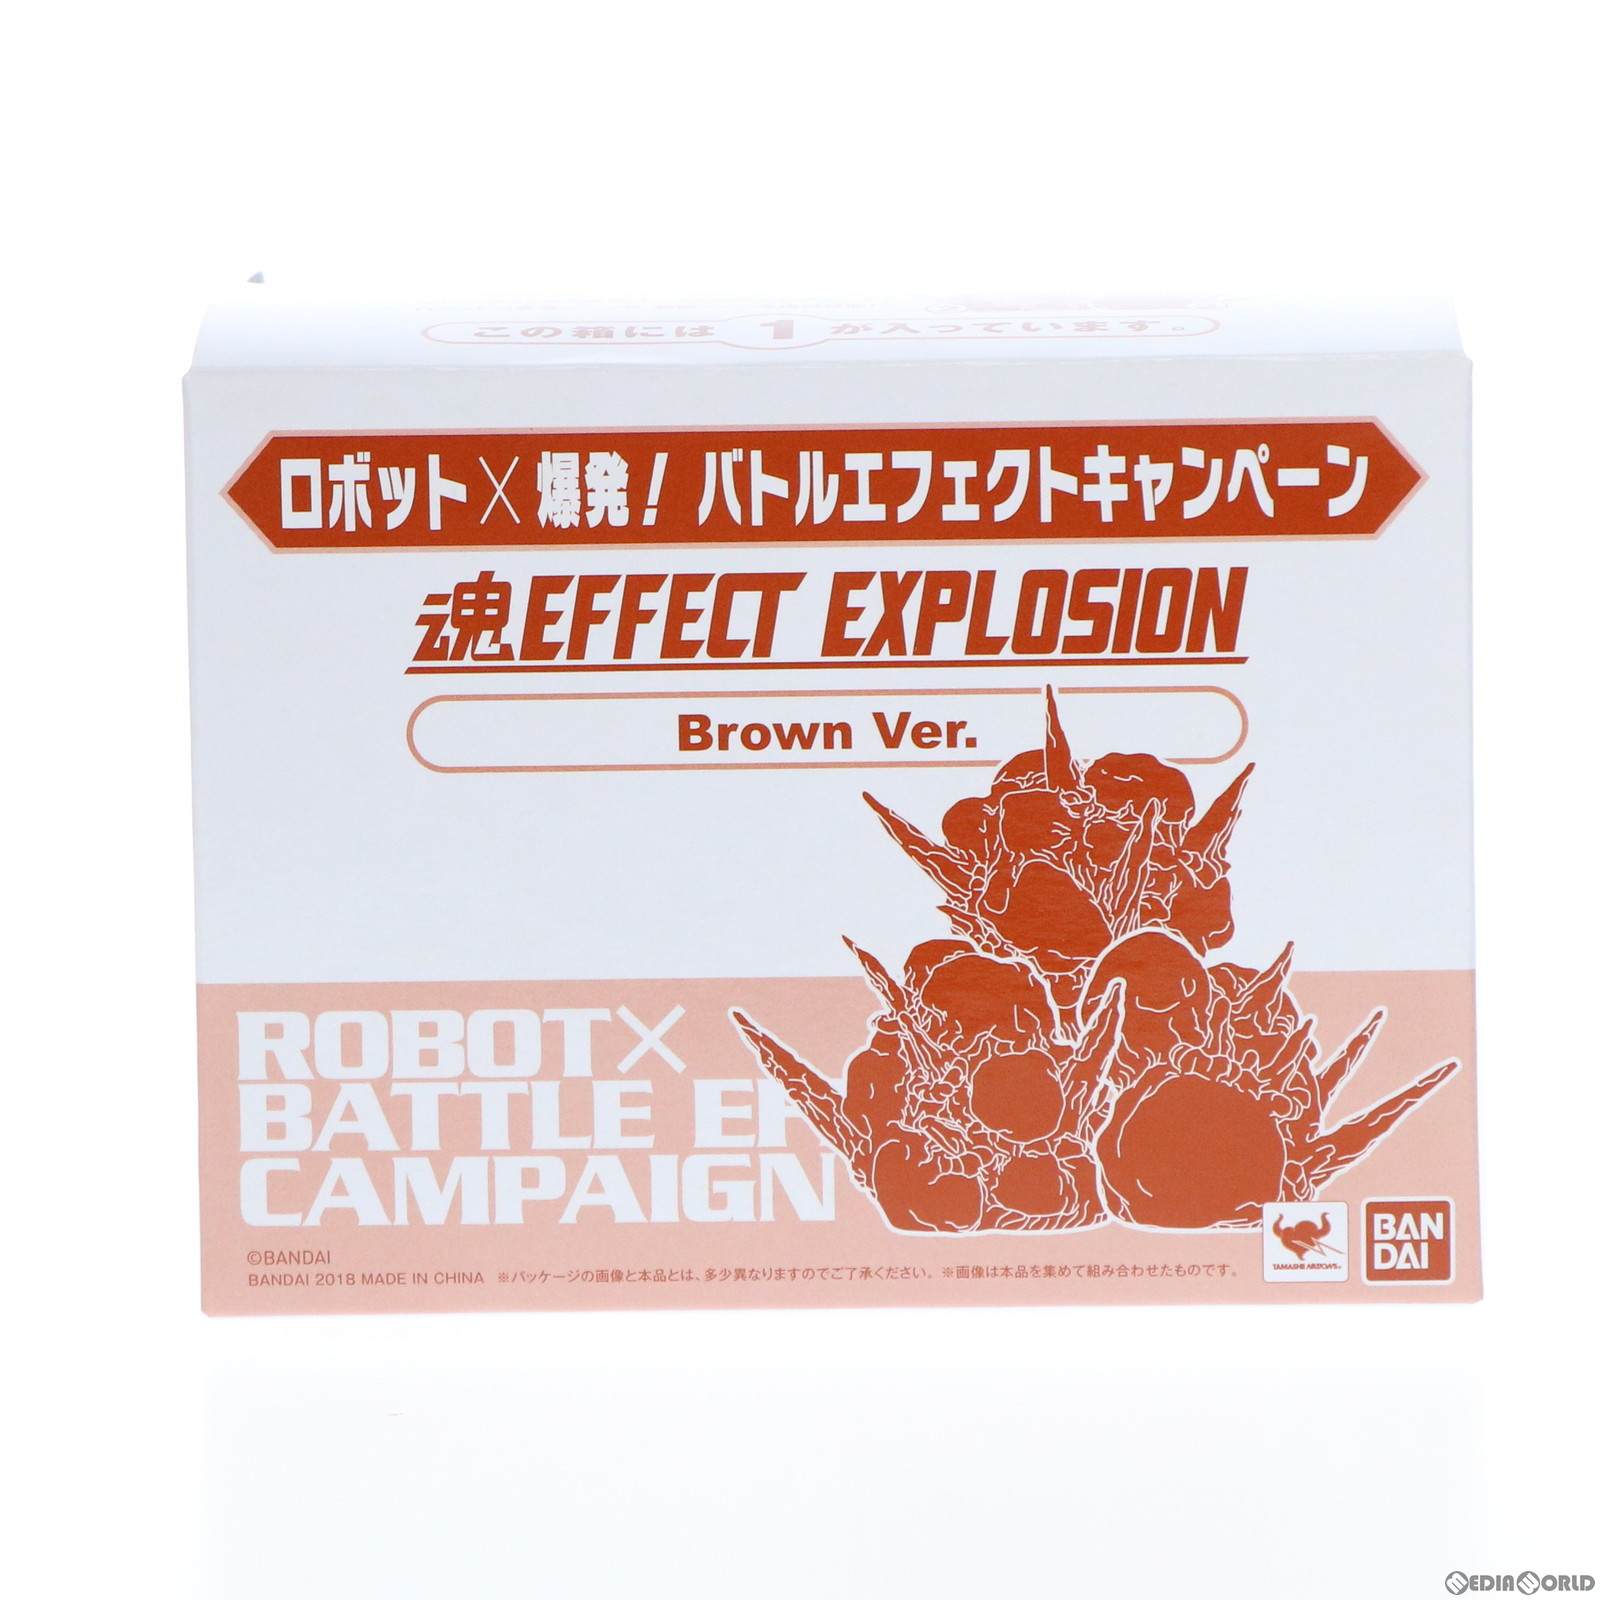 【中古即納】[FIG]魂EFFECT(魂エフェクト) EXPLOSION(形状1) Brown Ver. ロボット×爆発! バトルエフェクトキャンペーン配布品 完成品 フ